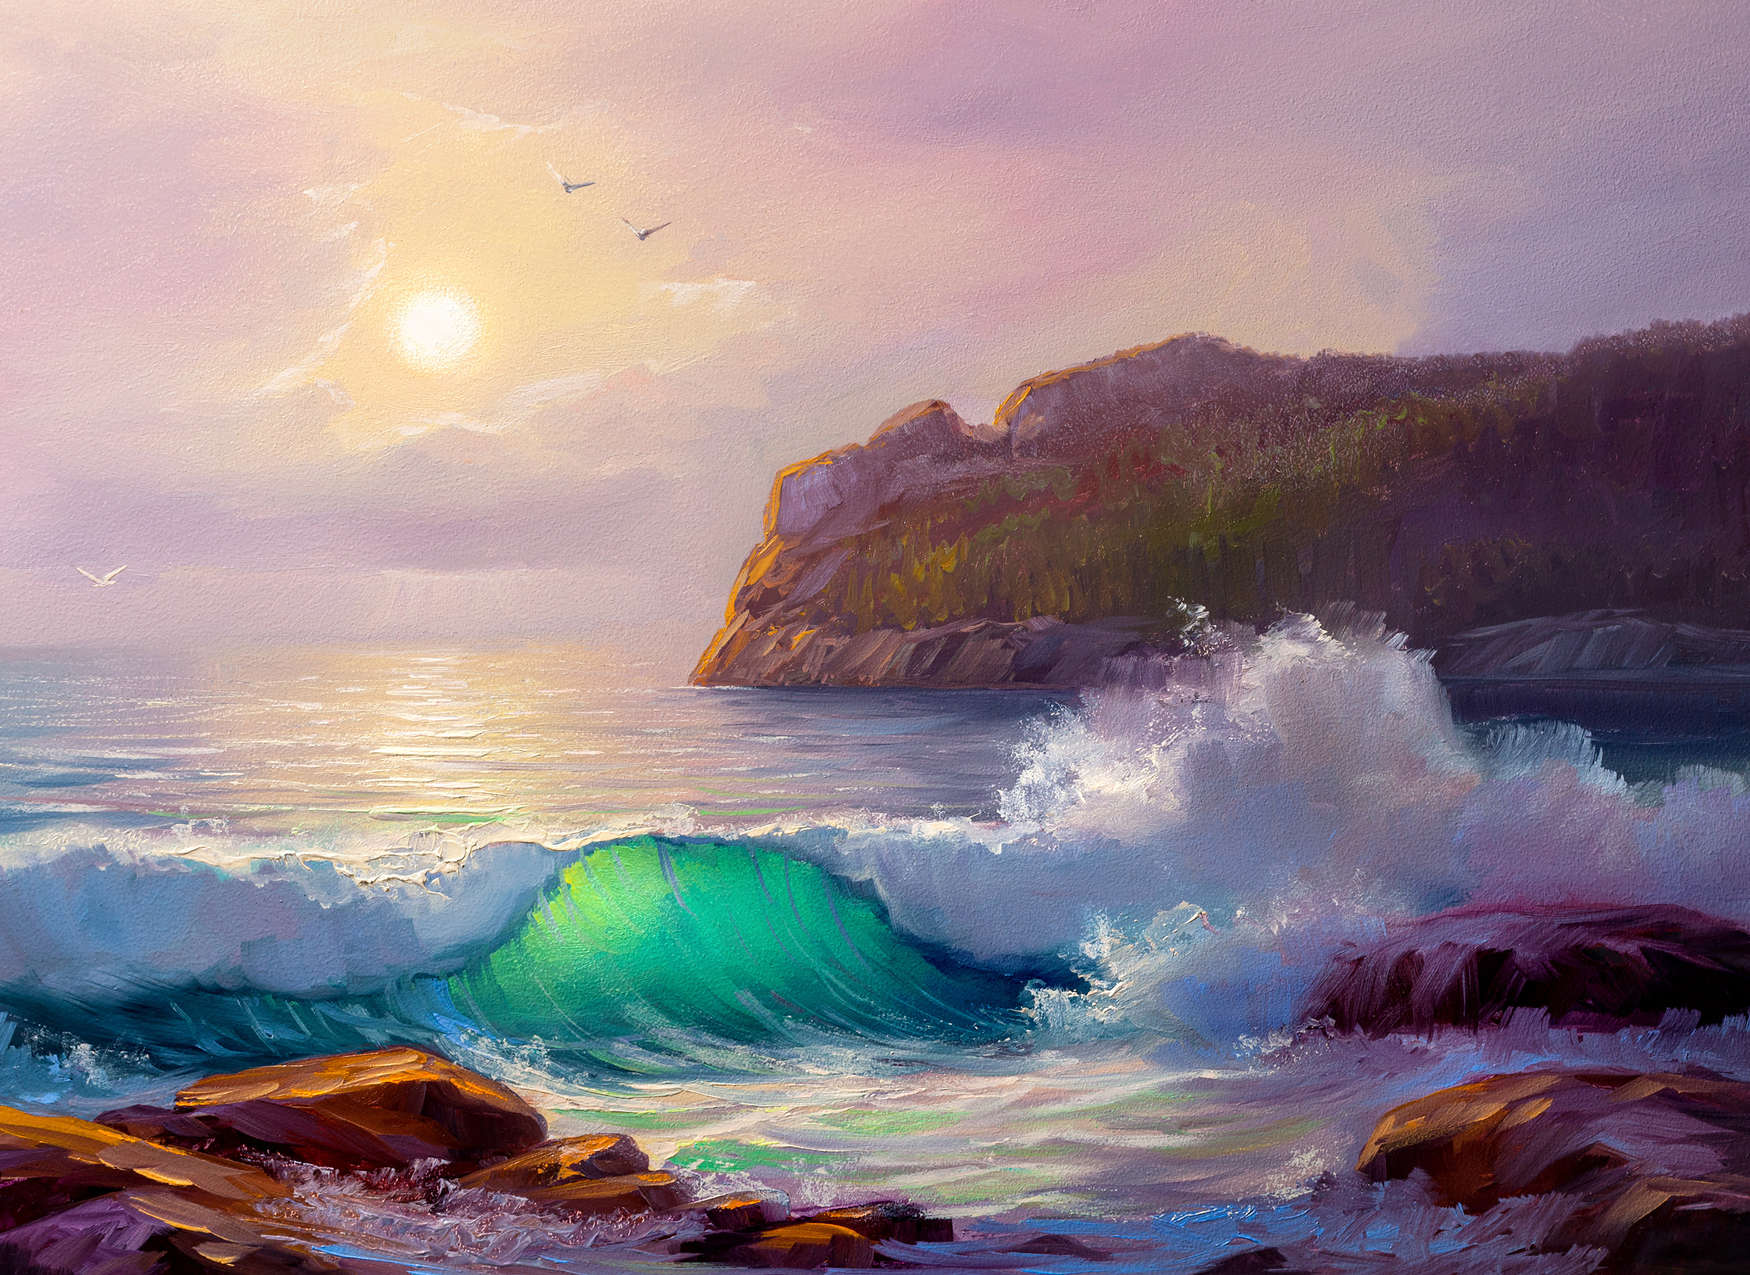             Fototapete Gemälde von einer Küste beim Sonnenaufgang – Blau, Violett, Braun
        